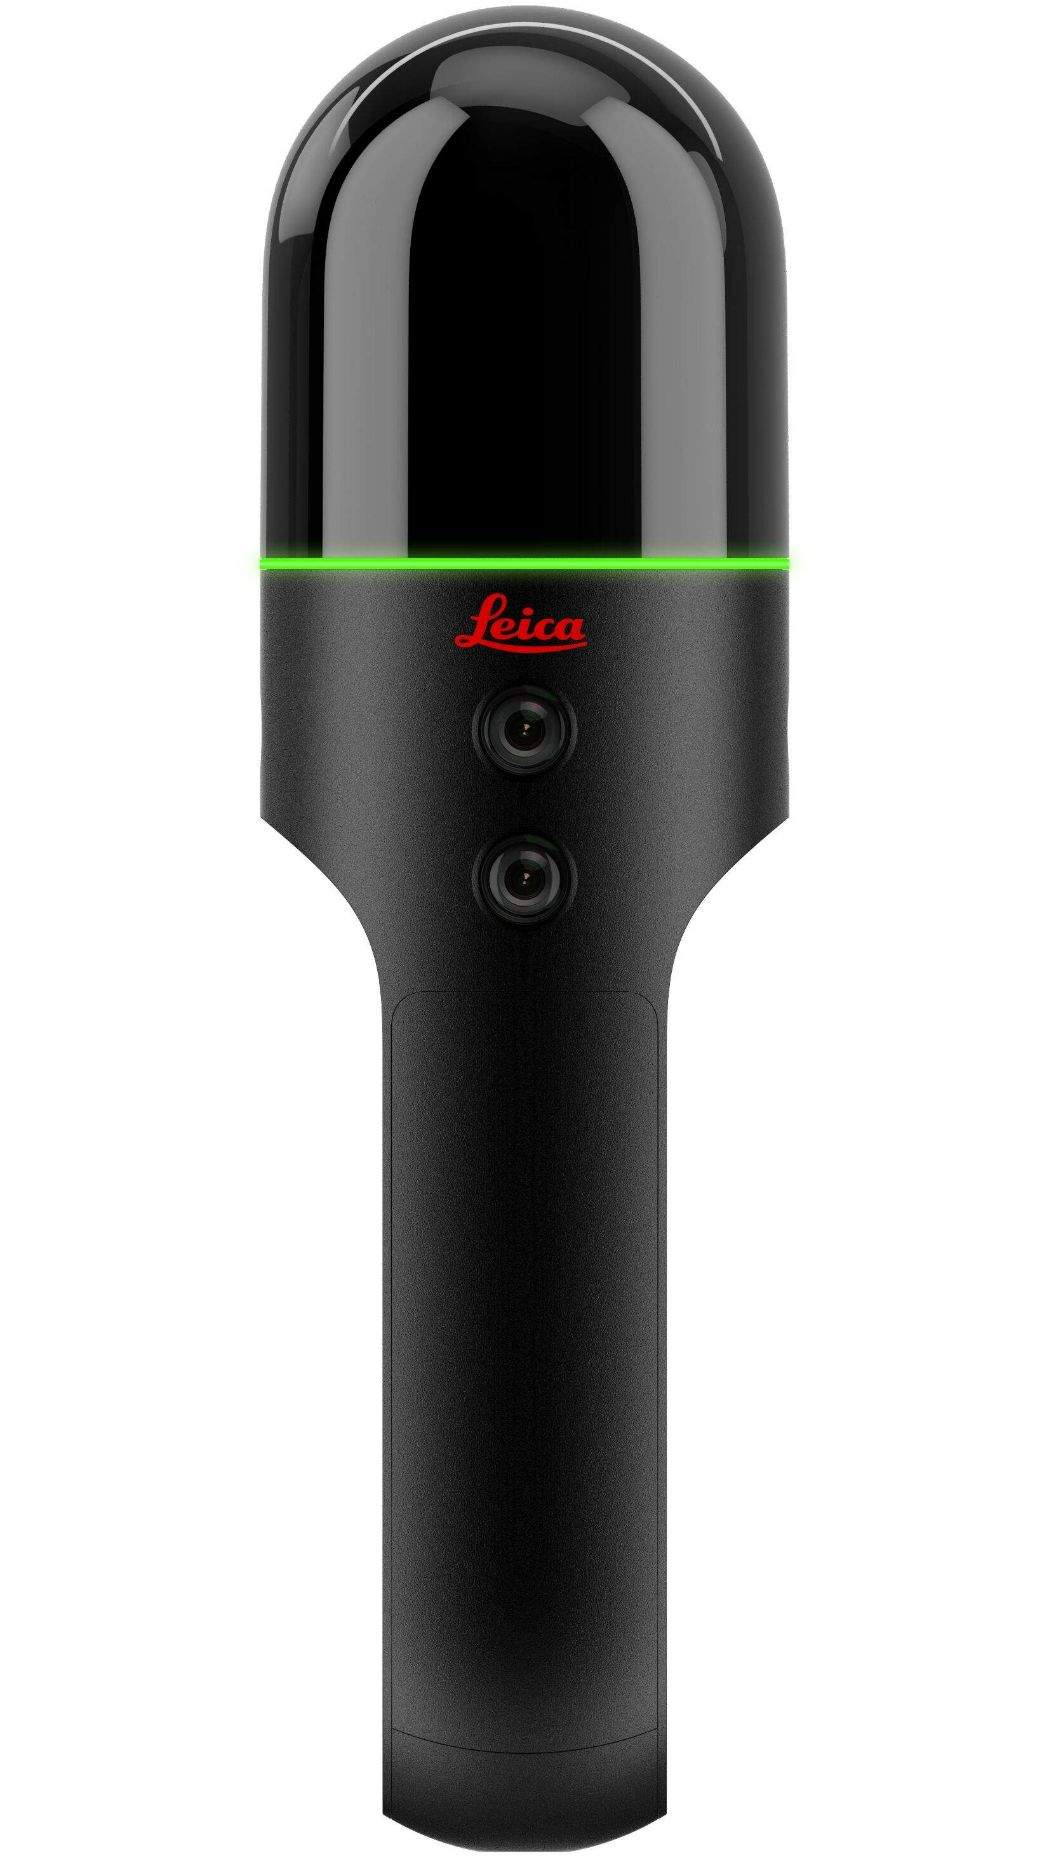 Leica BLK2GO. Autonome Umgebungserfassung: Tragbar, kabellos und leicht,   Handheld-Laserscanner  für die schnelle Umgebungserfassung unterwegs.